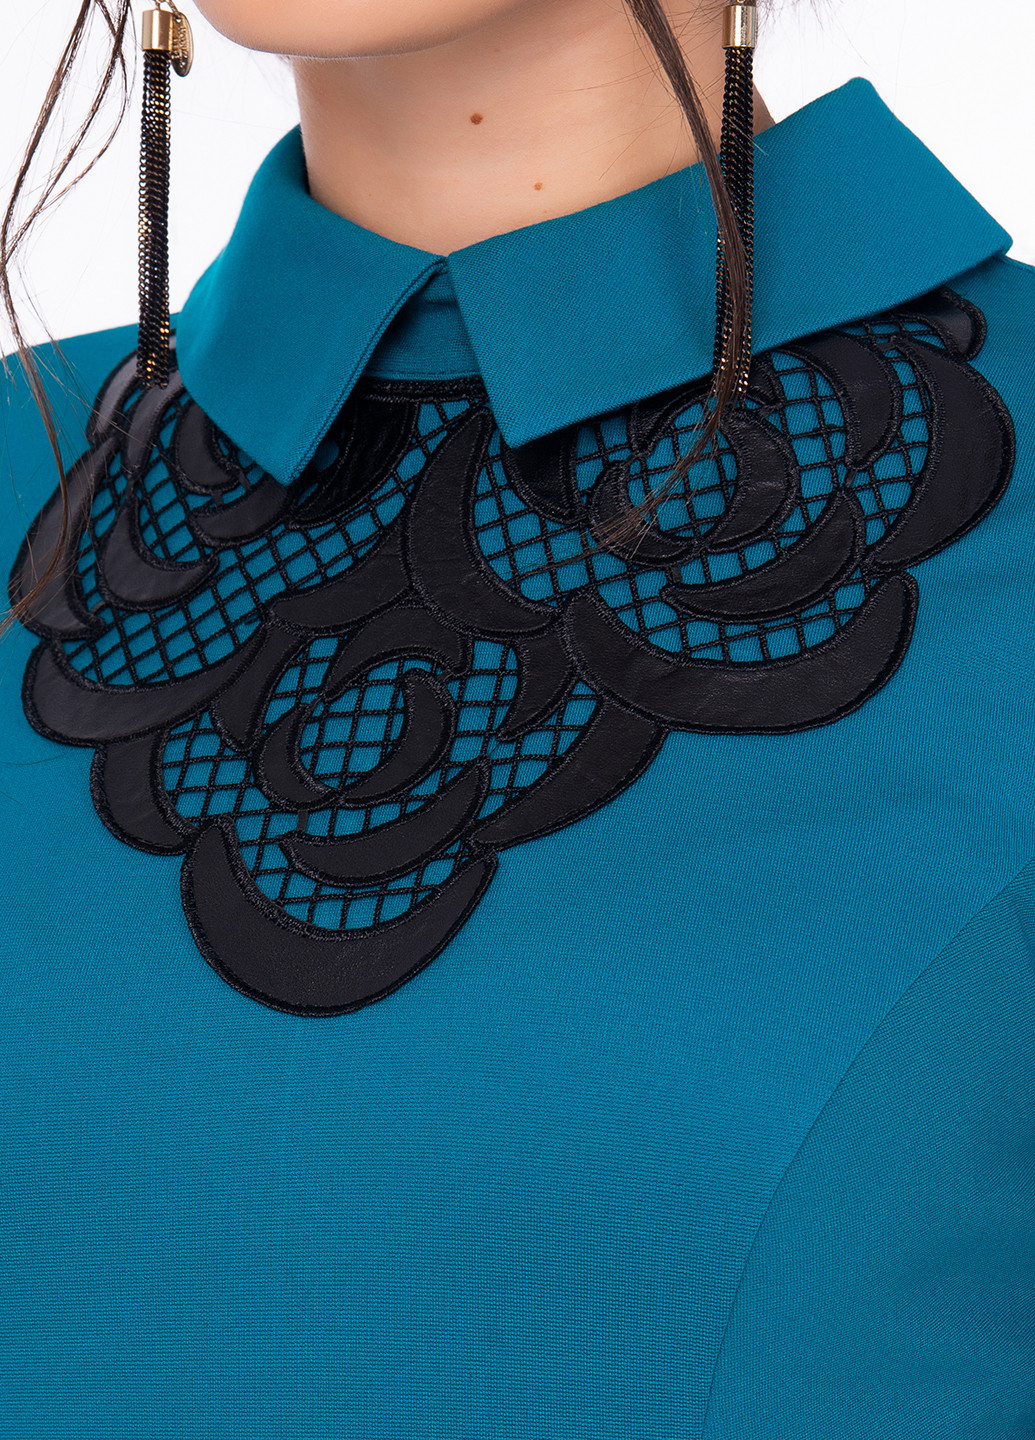 Темно-голубое кэжуал платье Iren Klairie однотонное